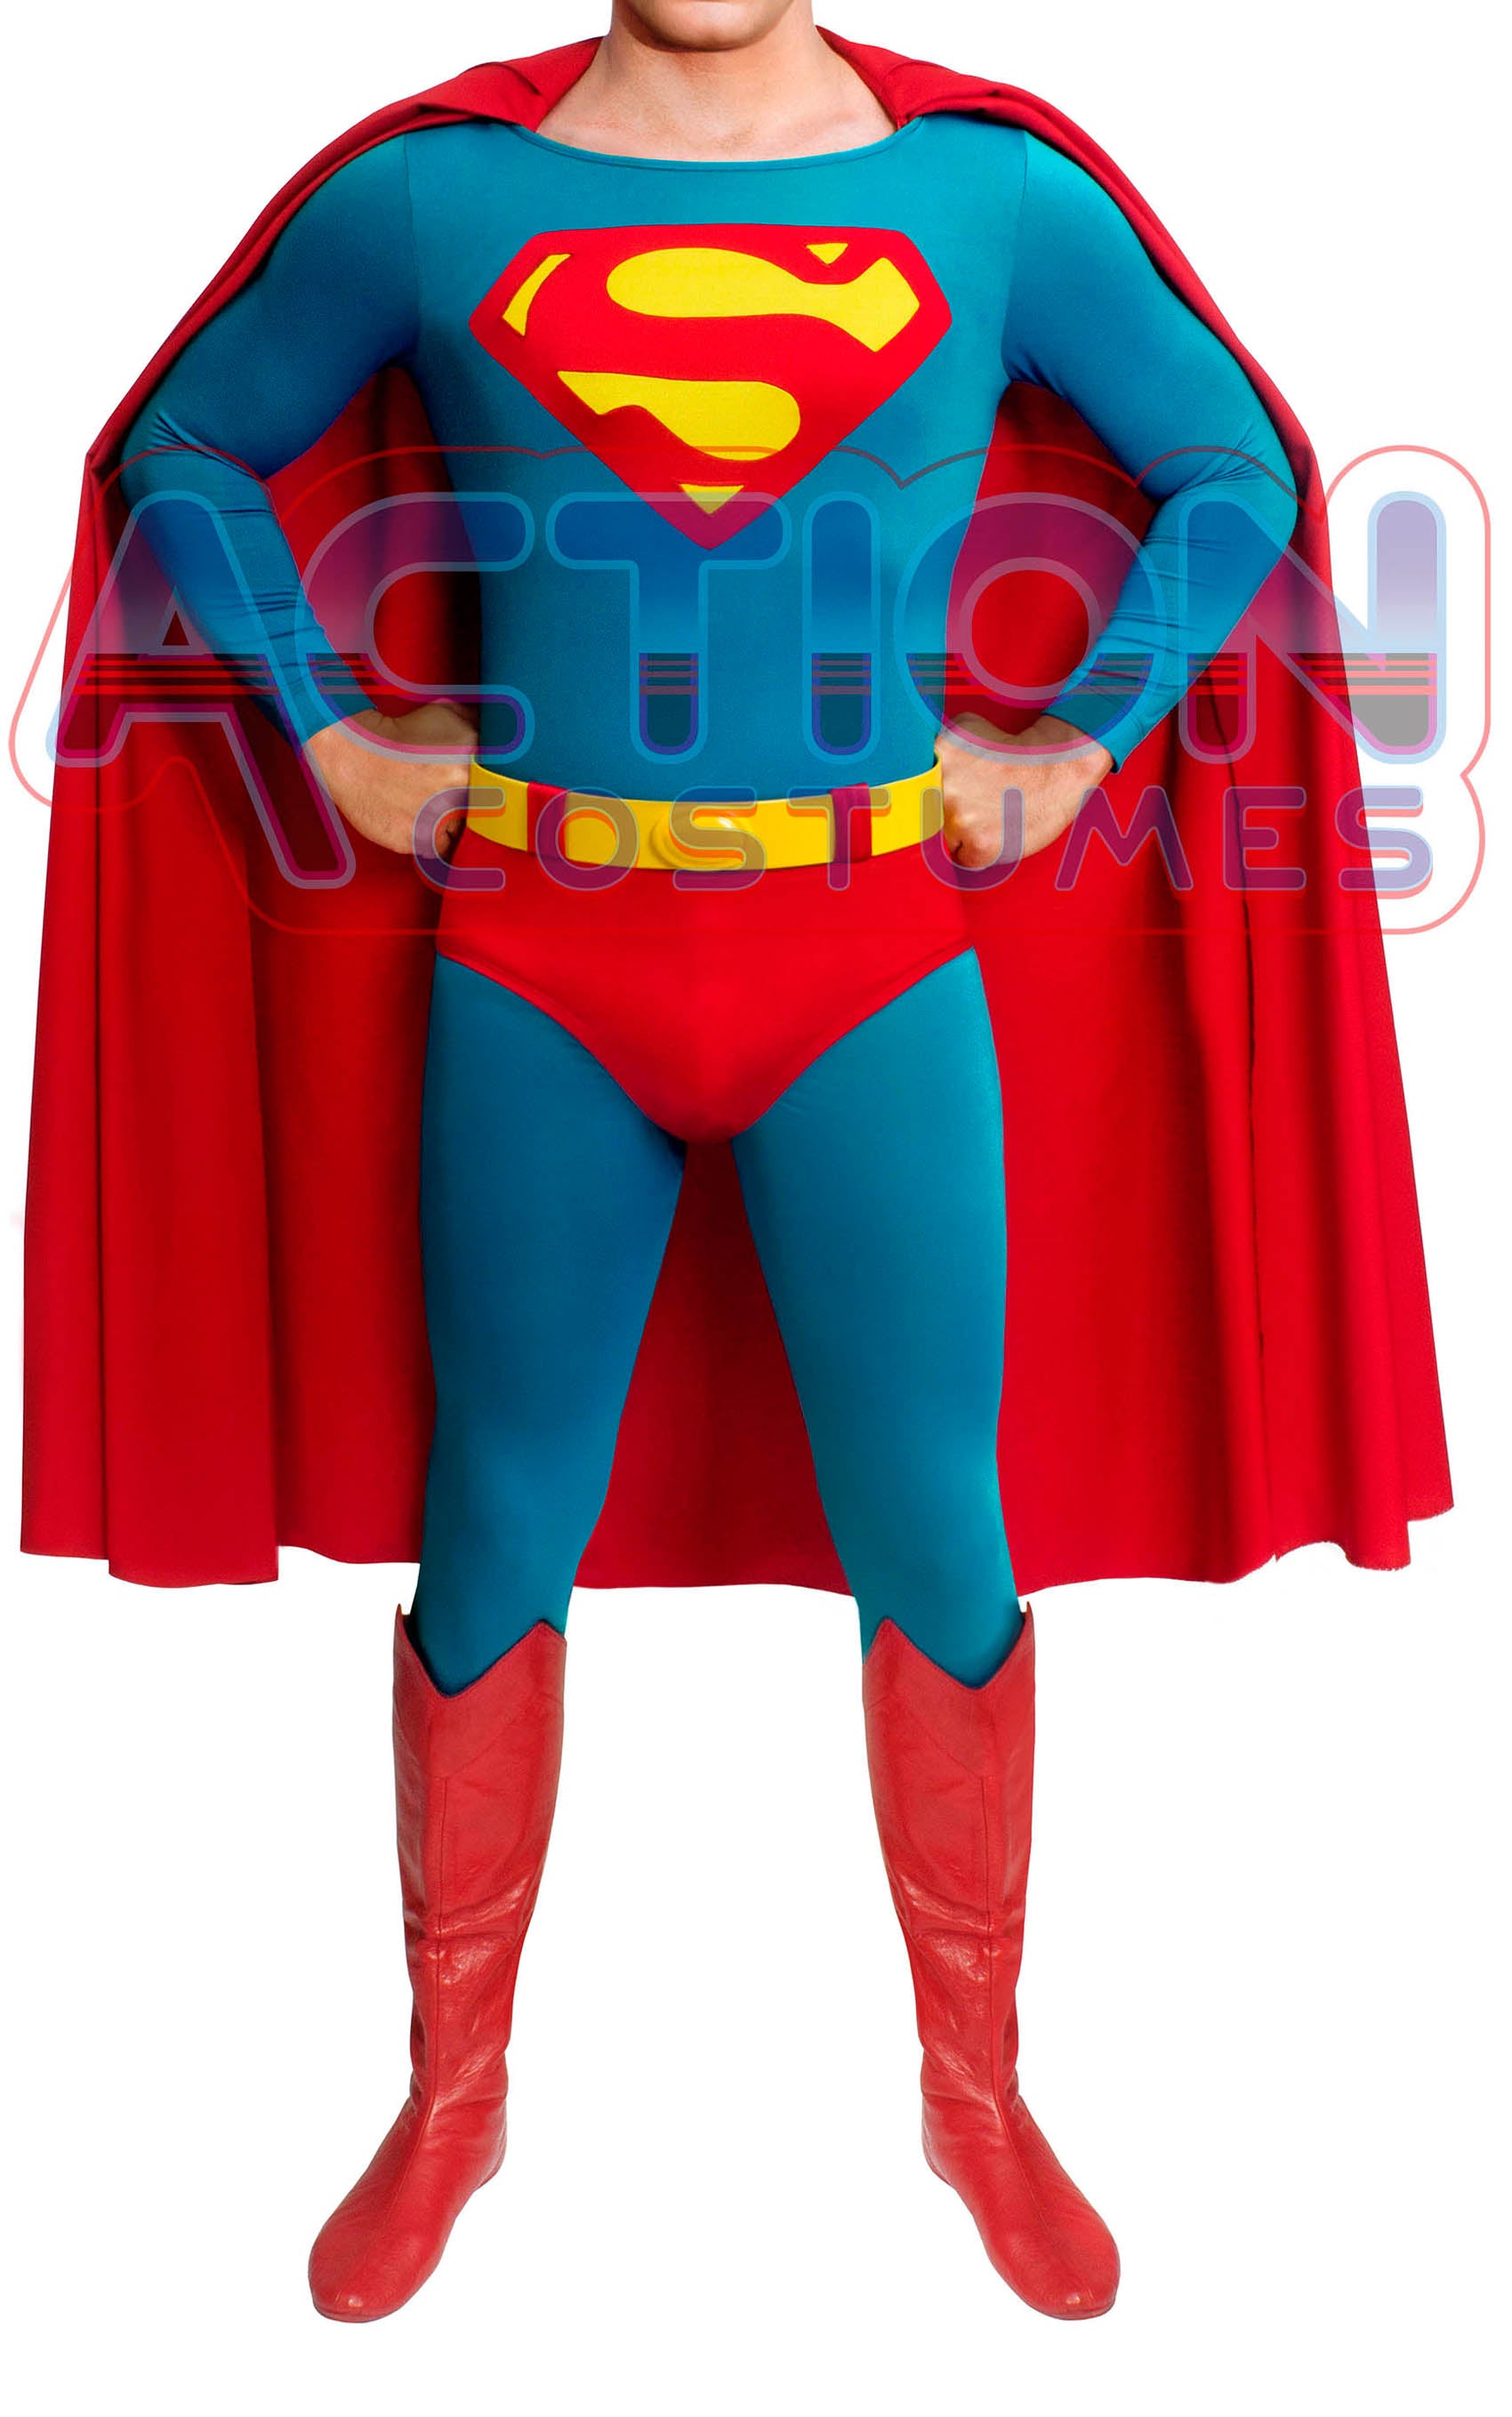 superman-costume-silver-edition